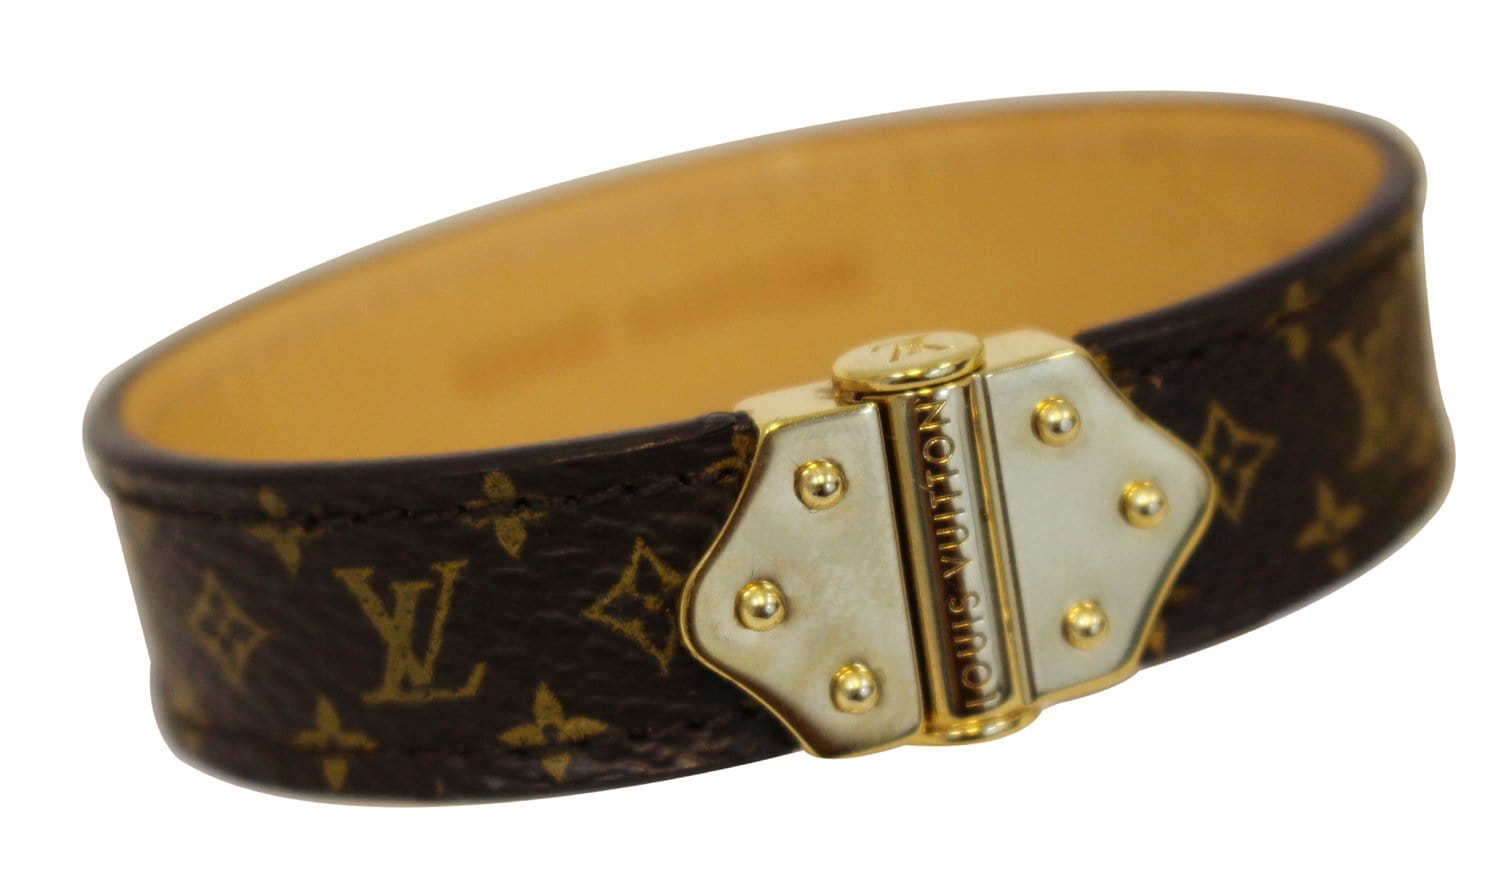 Louis Vuitton Nano Monogram Bracelet - Size 17